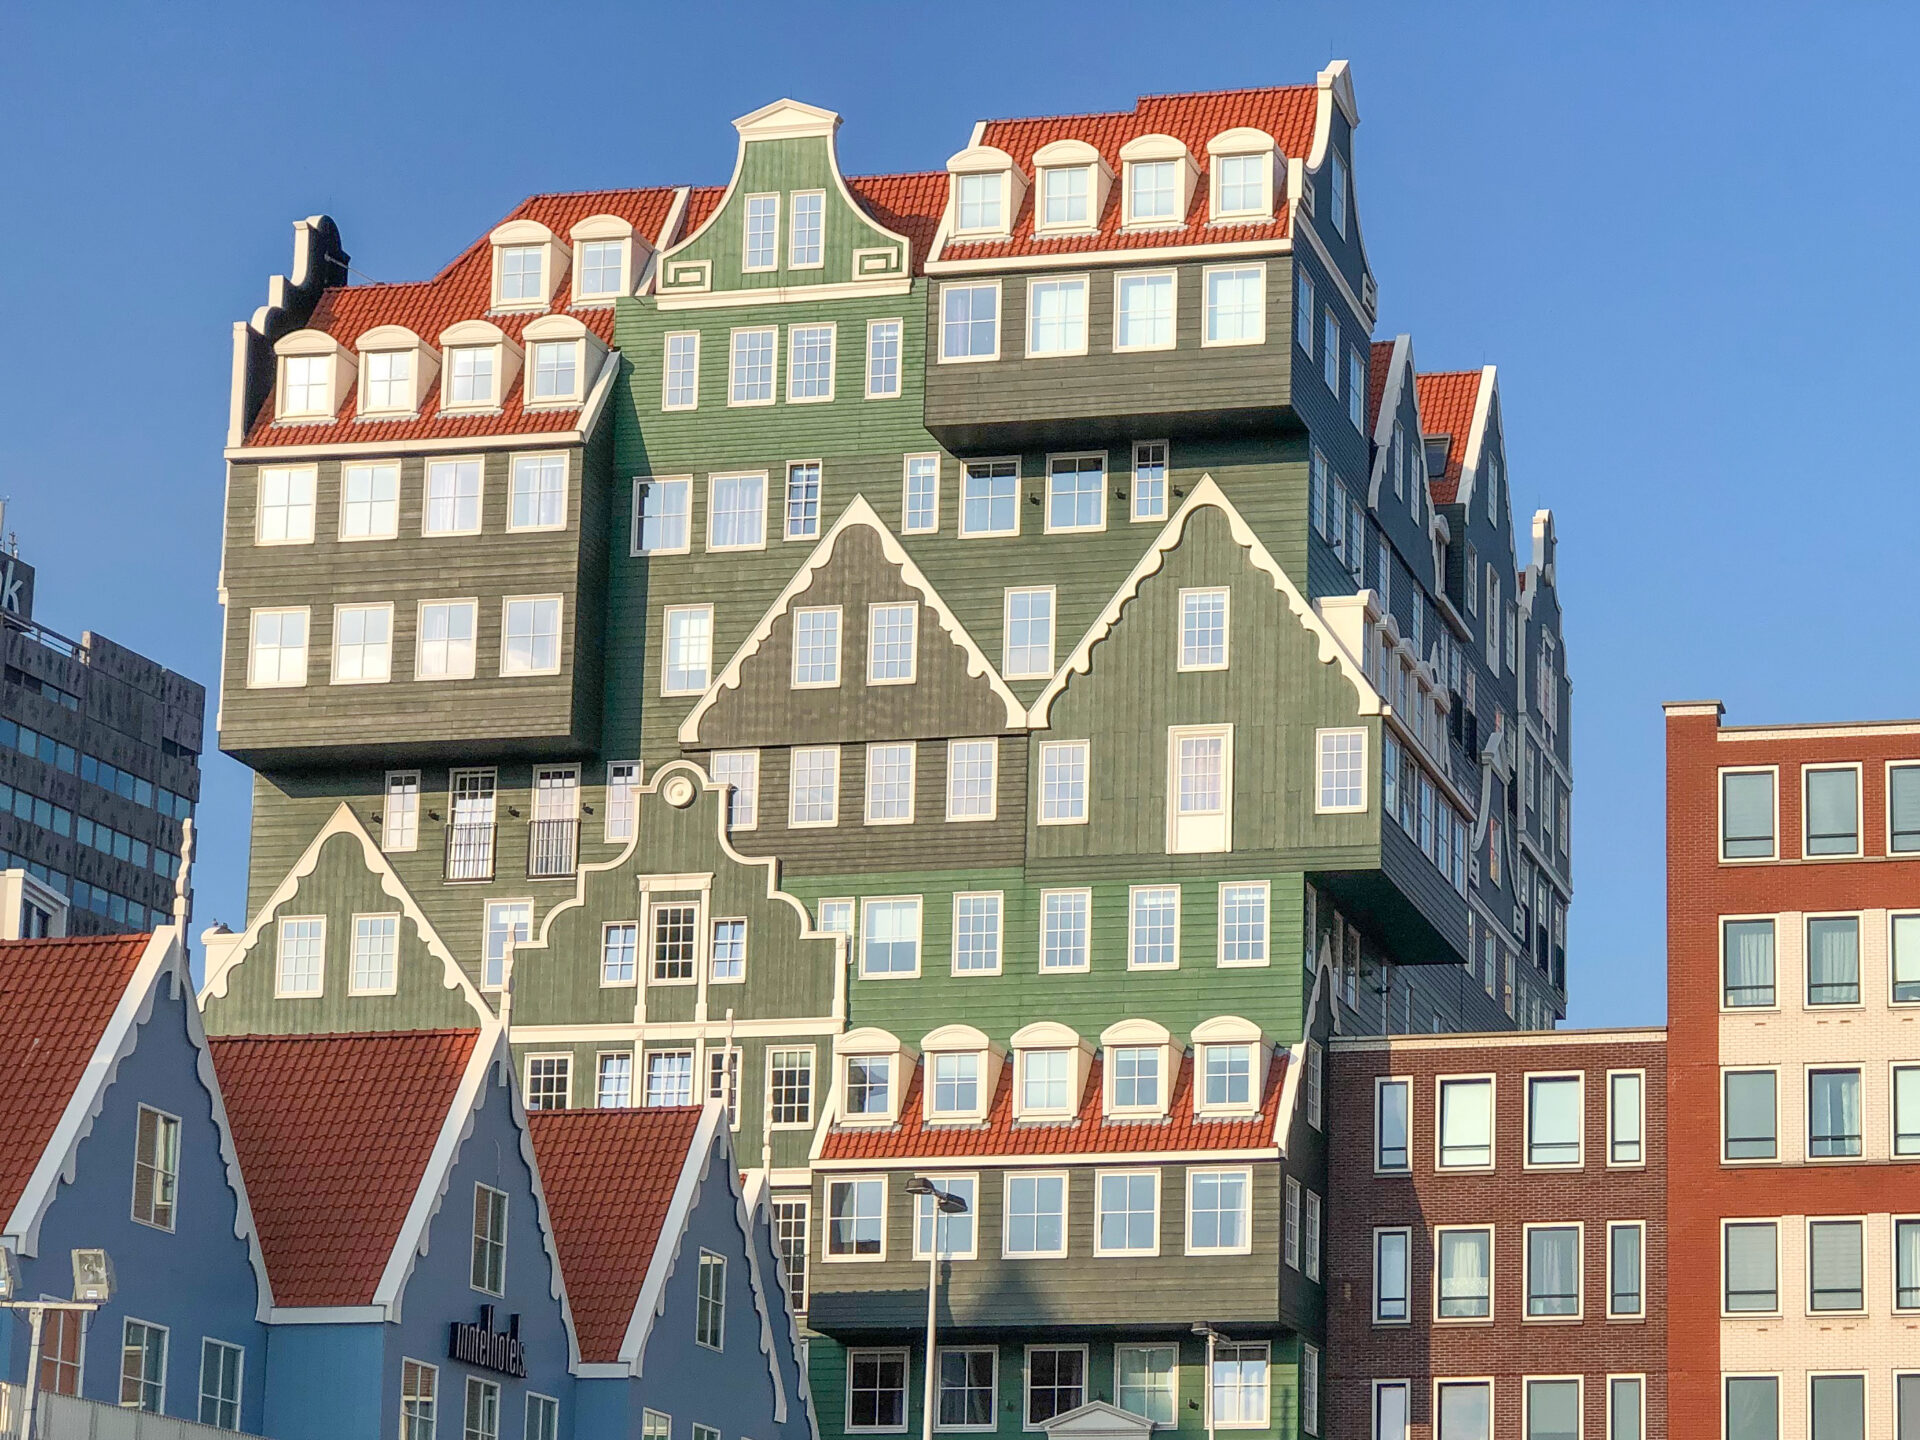 Das Inntel Hotel in Zaandam besticht durch seine experimentelle Fassade, in der allerlei altholländische Häuschen verarbeitet scheinen